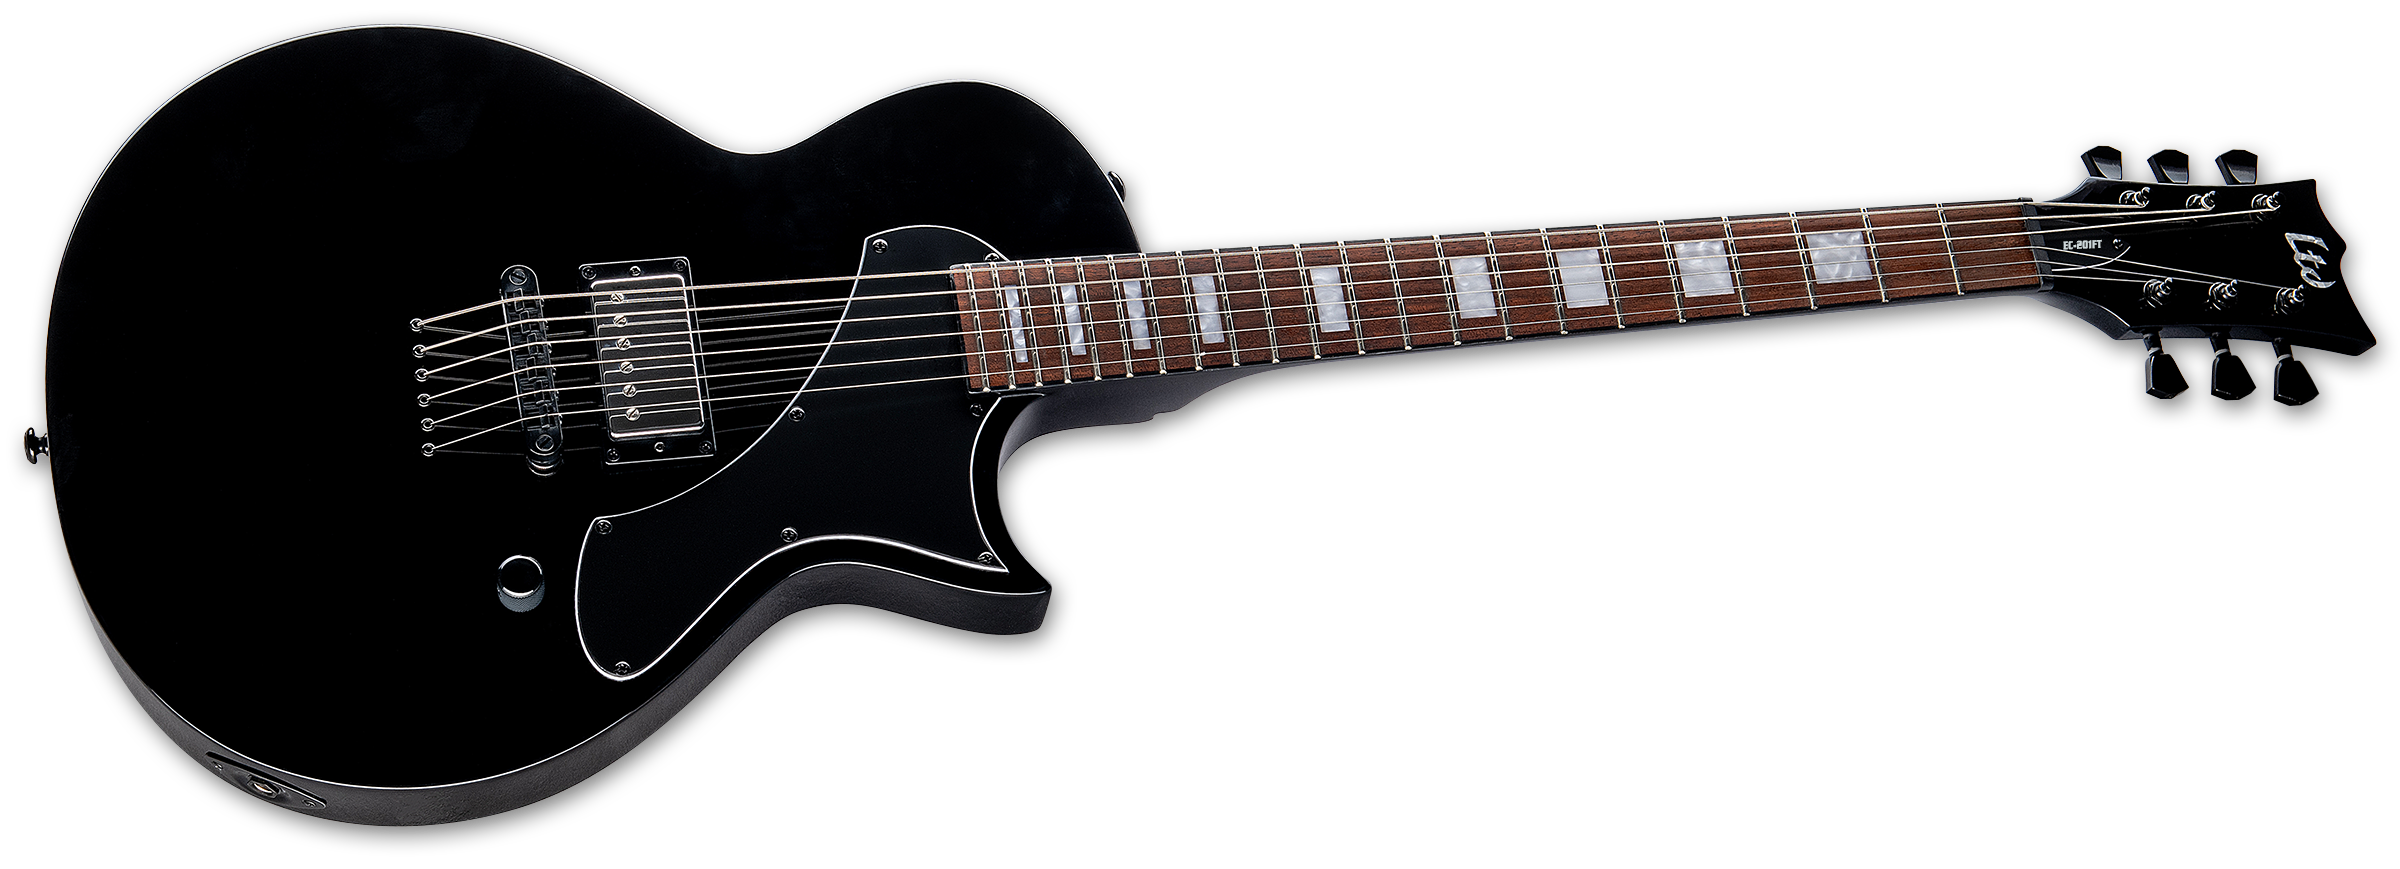 Ltd Ec-201 1h Ht Jat - Black - Metalen elektrische gitaar - Variation 2